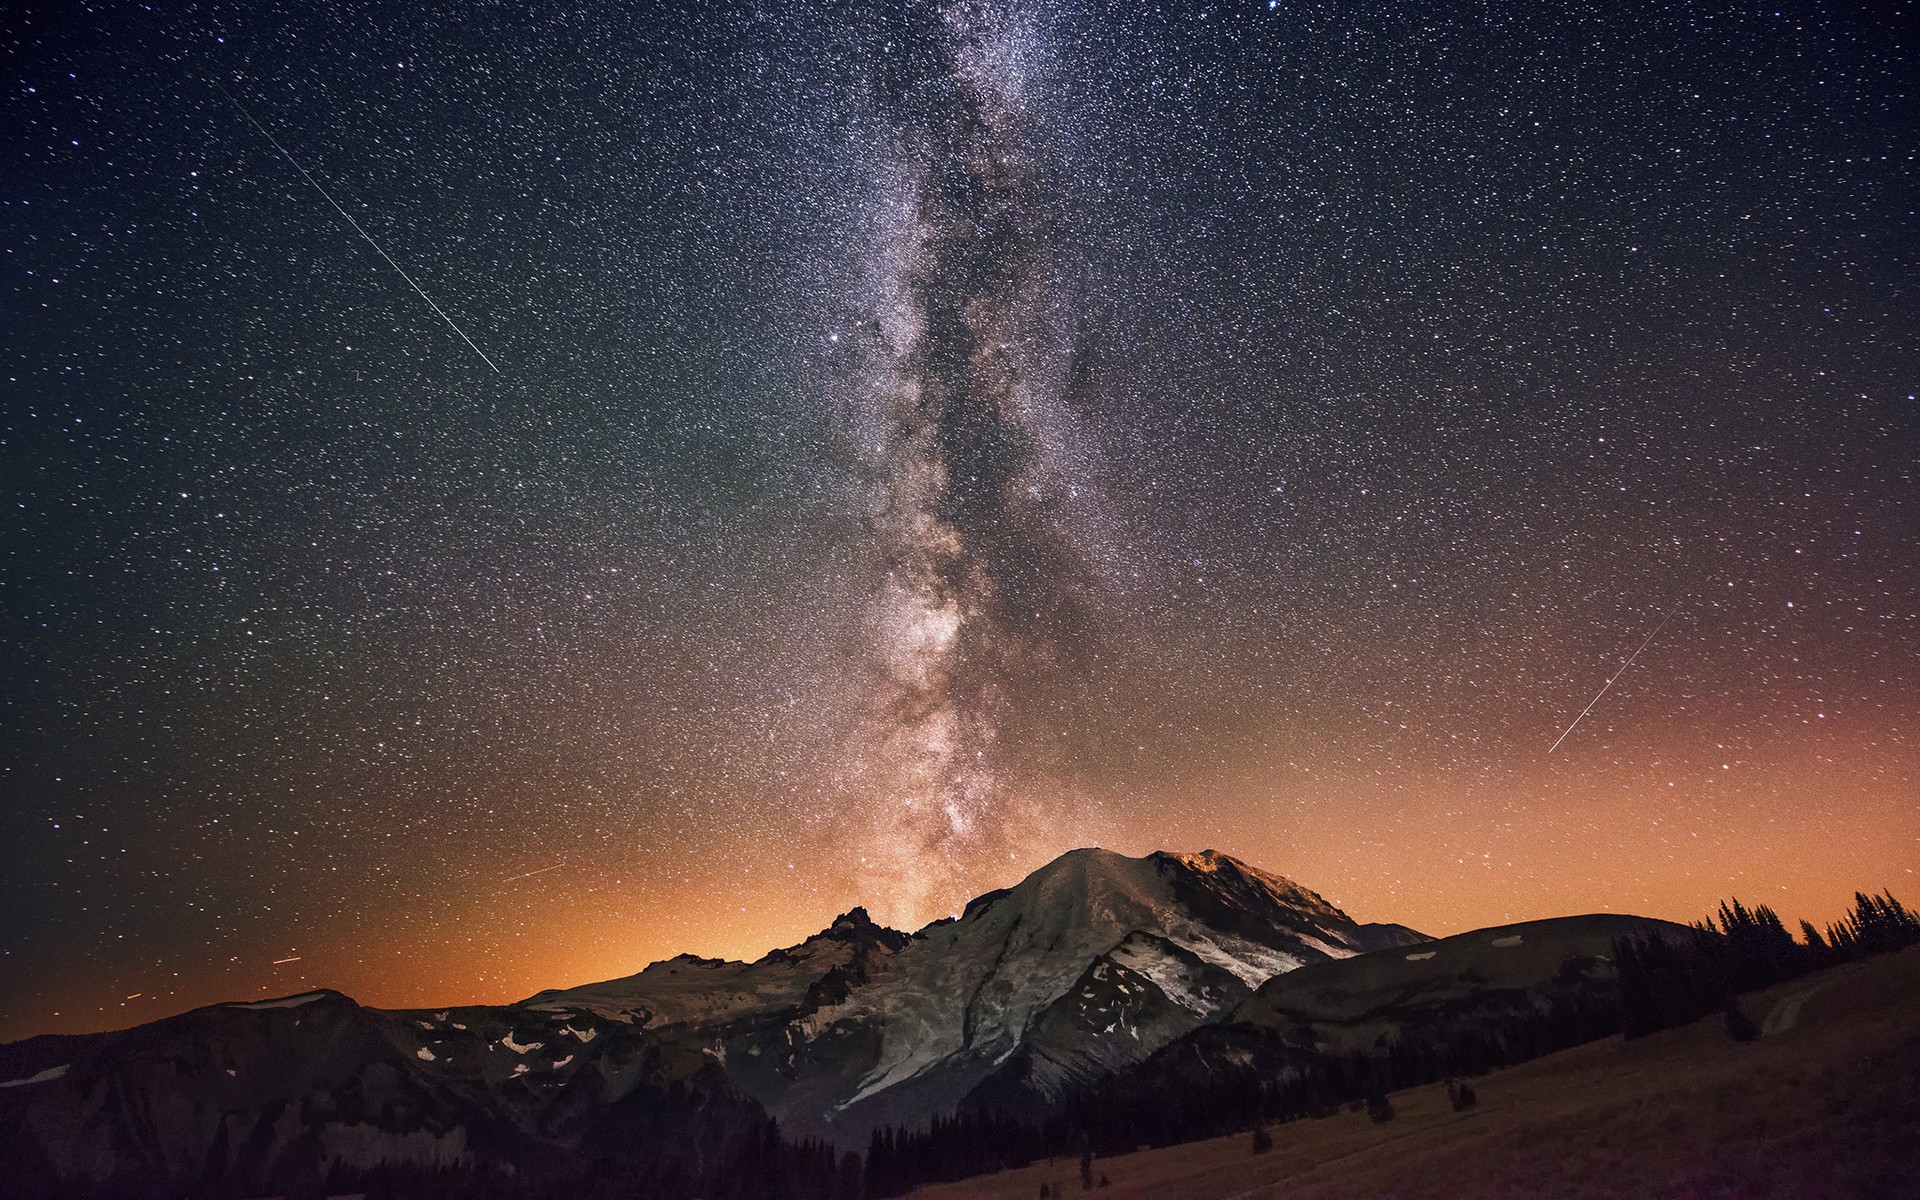 Retro 8 Bit Pixelart Wallpapers - Mount Shasta Milky Way , HD Wallpaper & Backgrounds